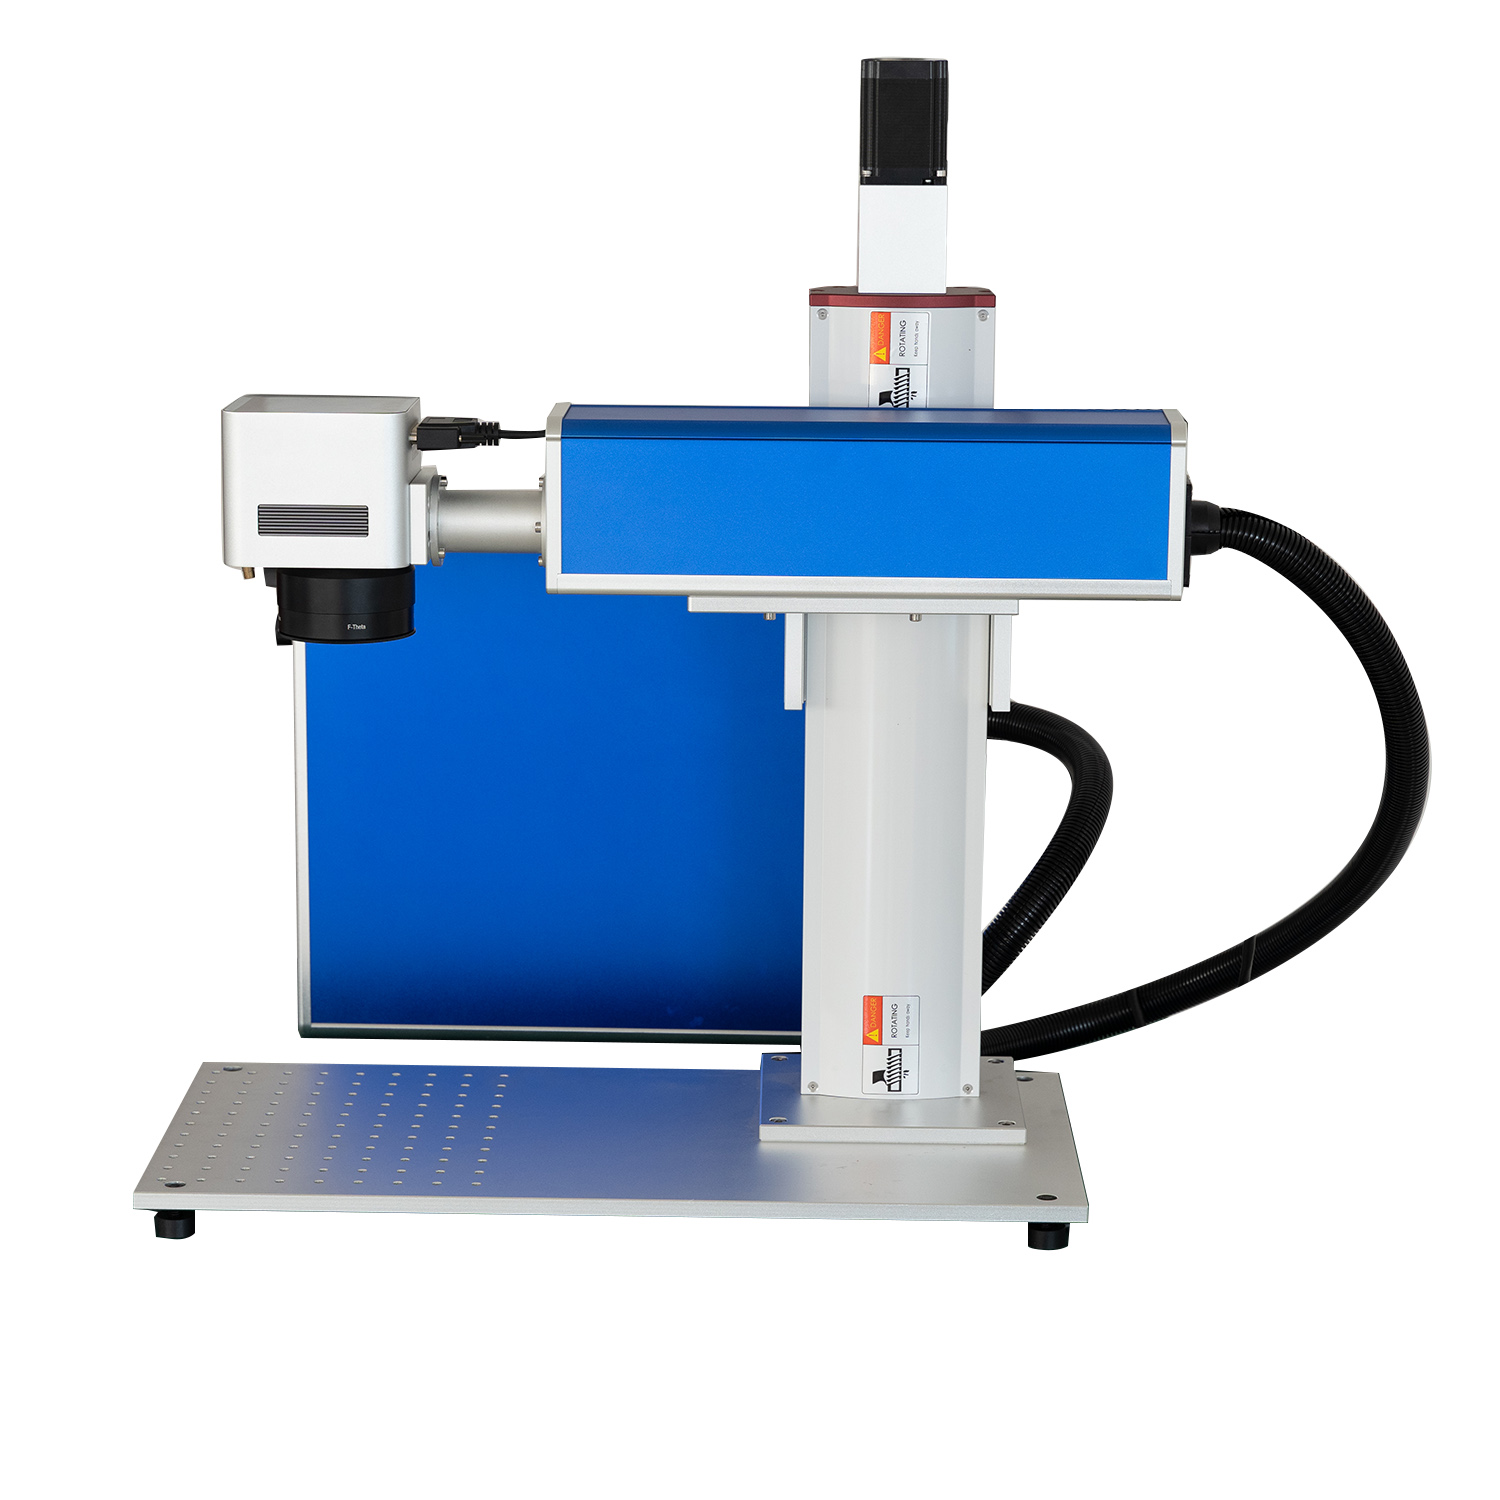 Machine de marquage laser à fibre à vendre Prix usine directement 60w 80w 100w 120w Mopa Machine de marquage laser à fibre